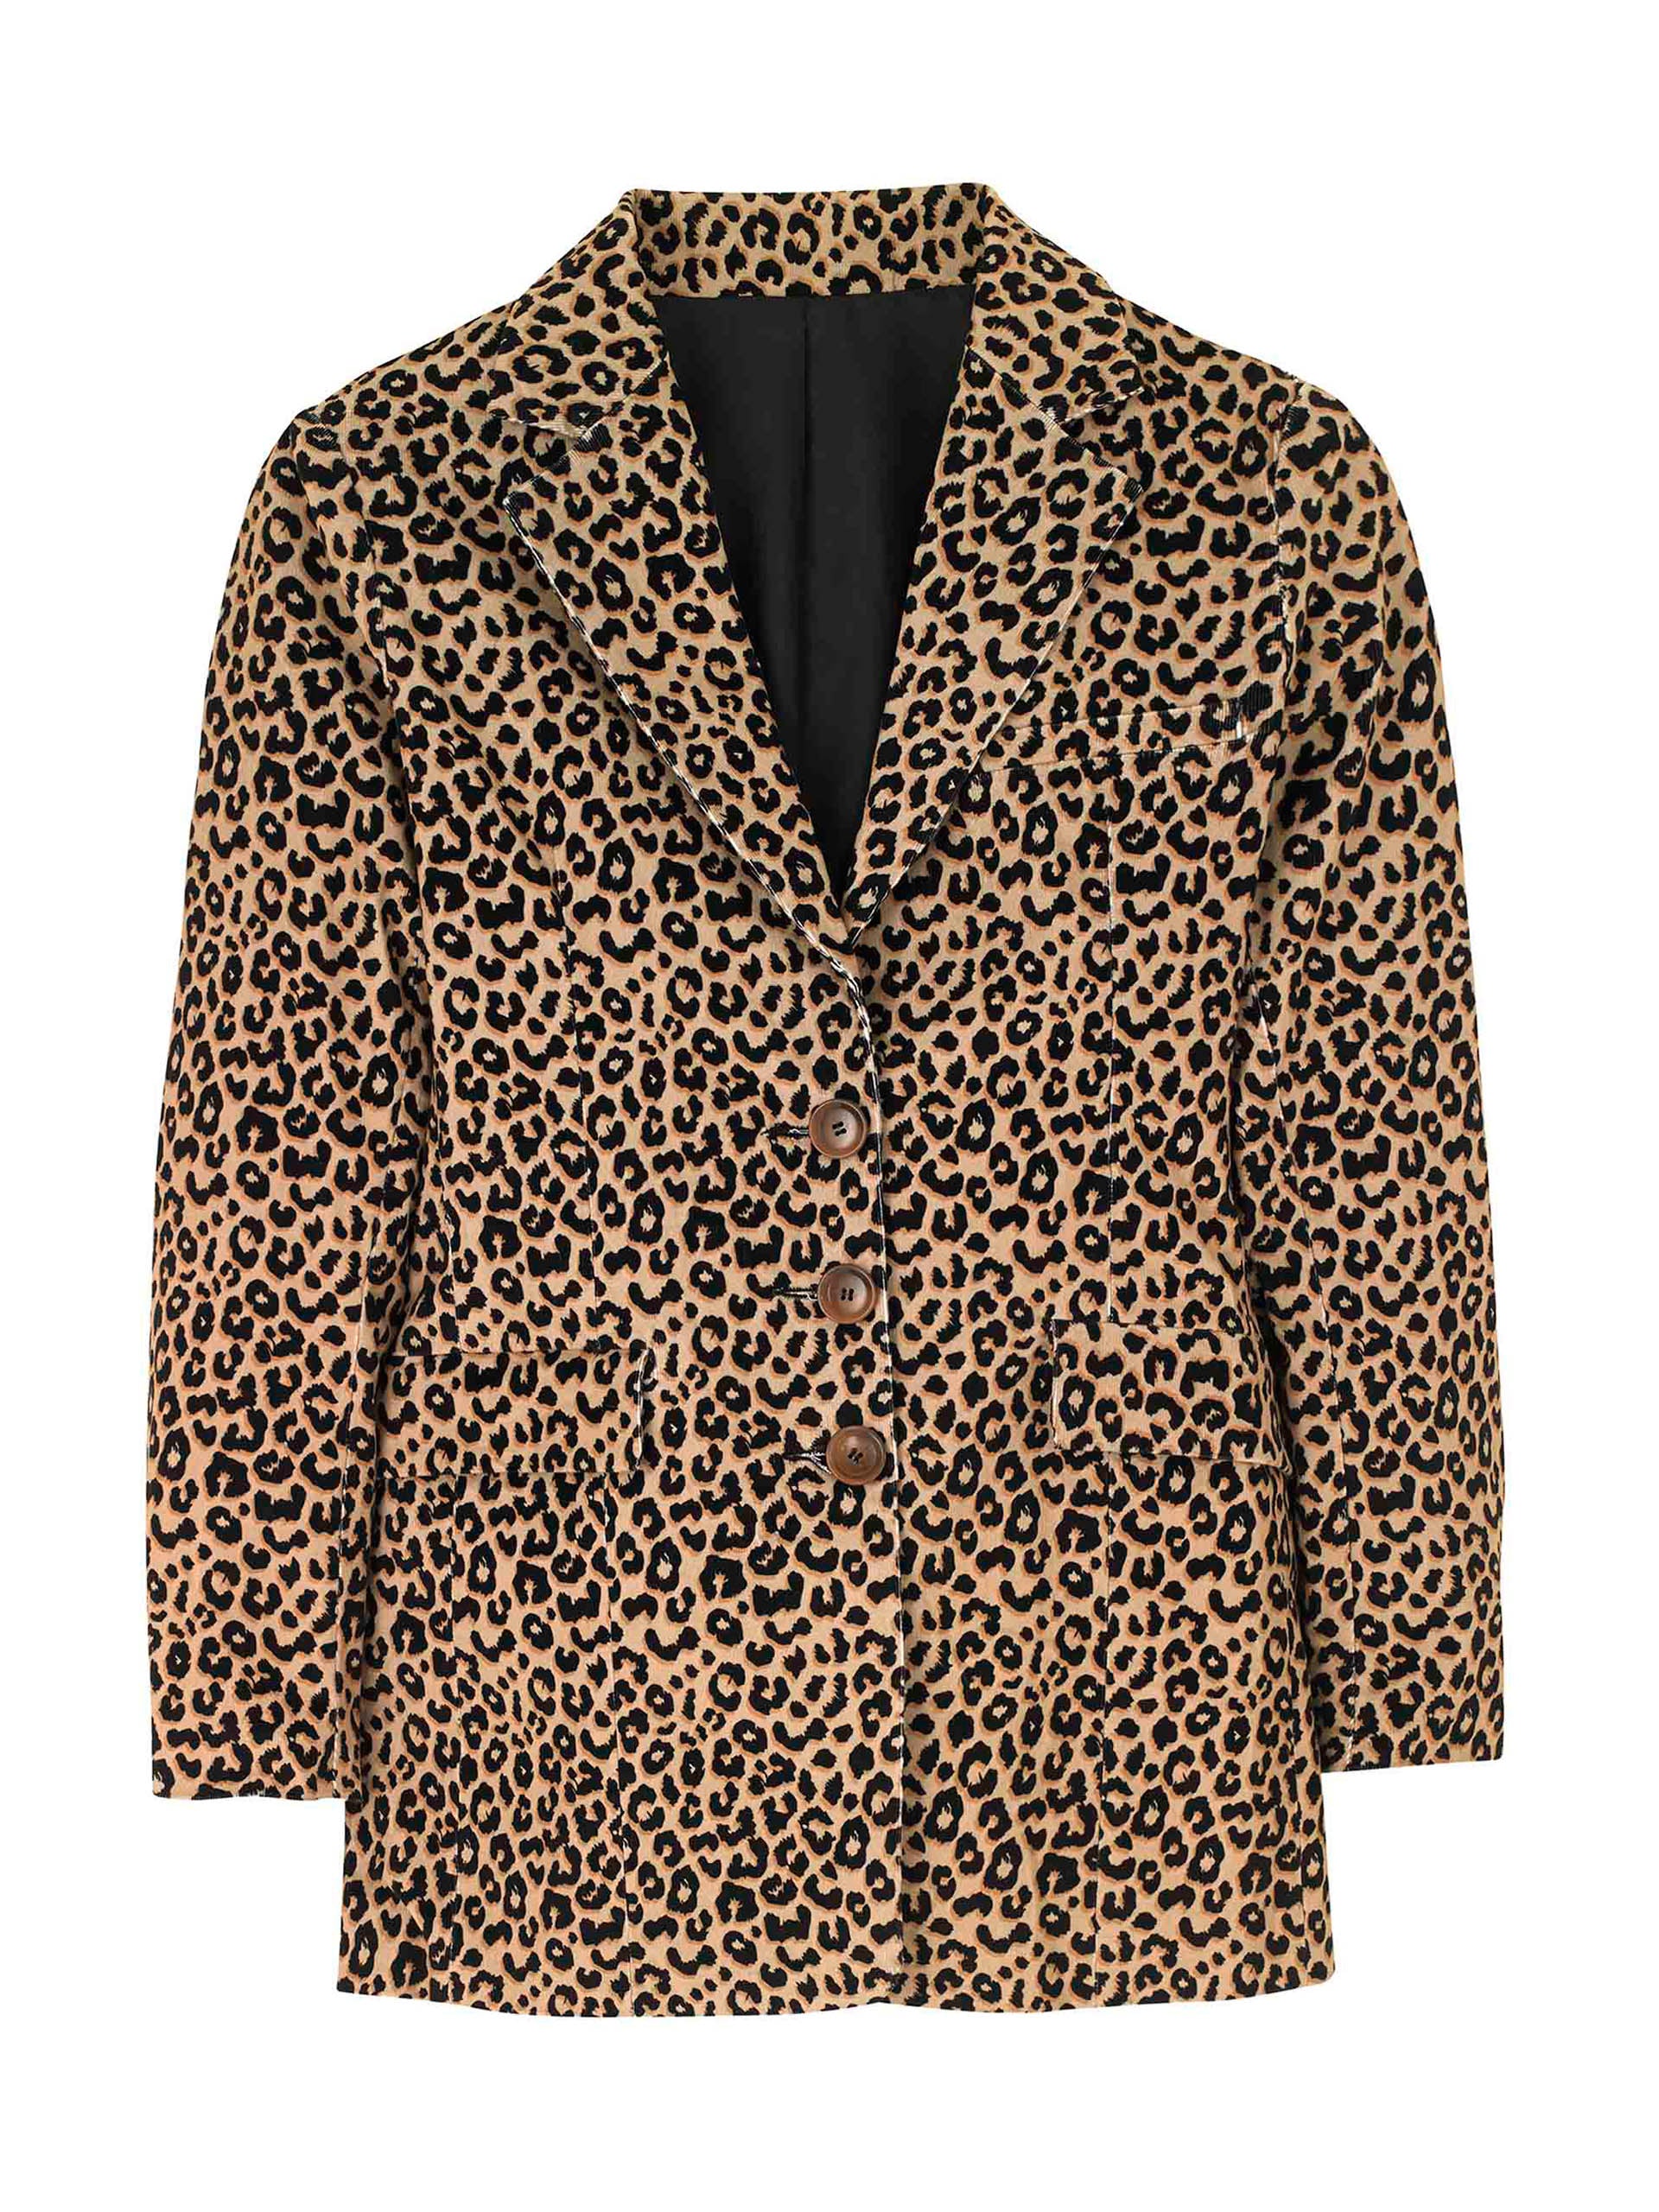 Leopard corduroy jacket - Collagerie.com